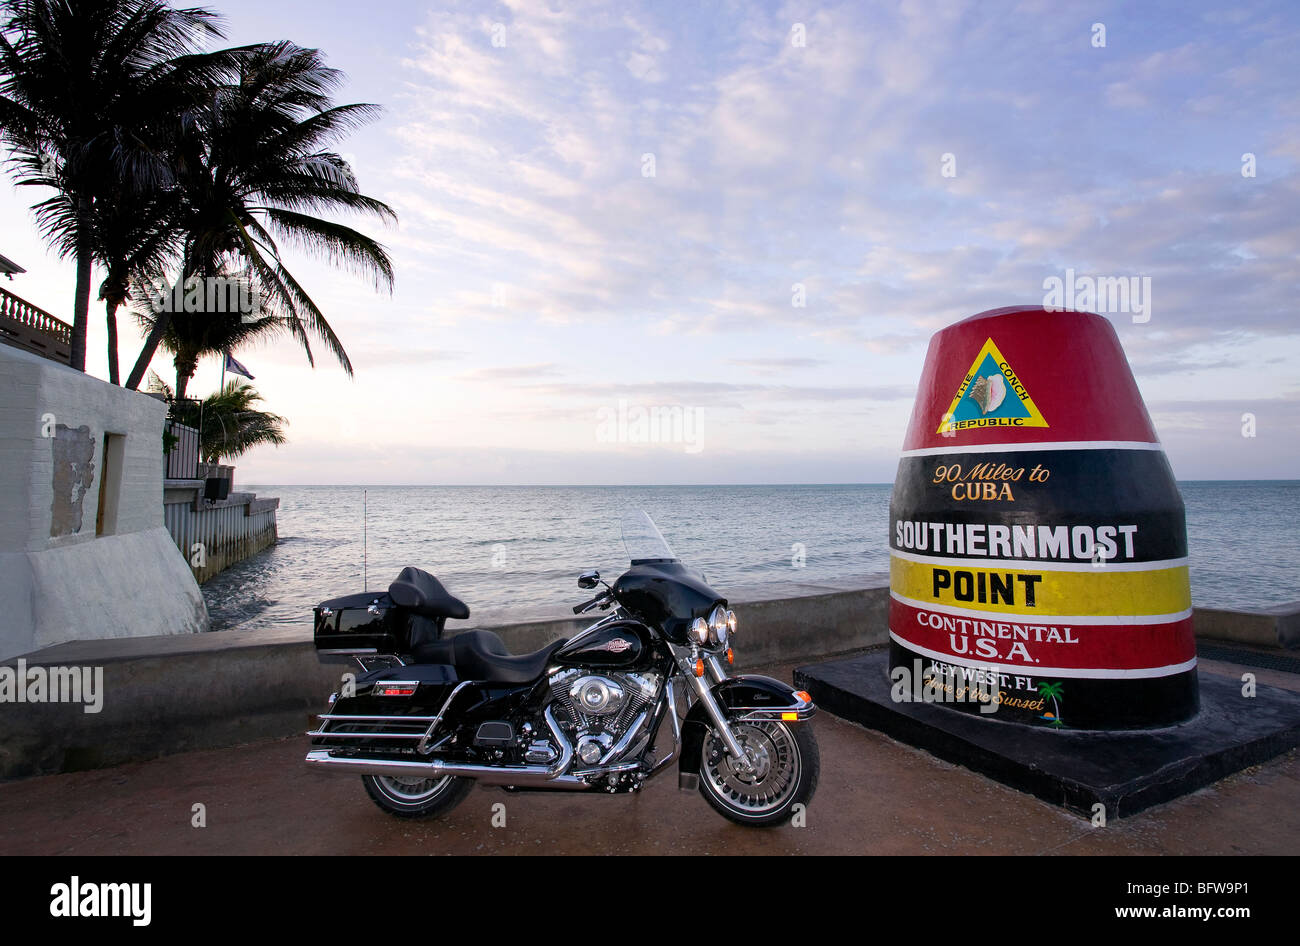 2009 Harley Davidson Electra Glide classic am südlichsten Punkt USA Whitehead St Key West Florida. Stockfoto